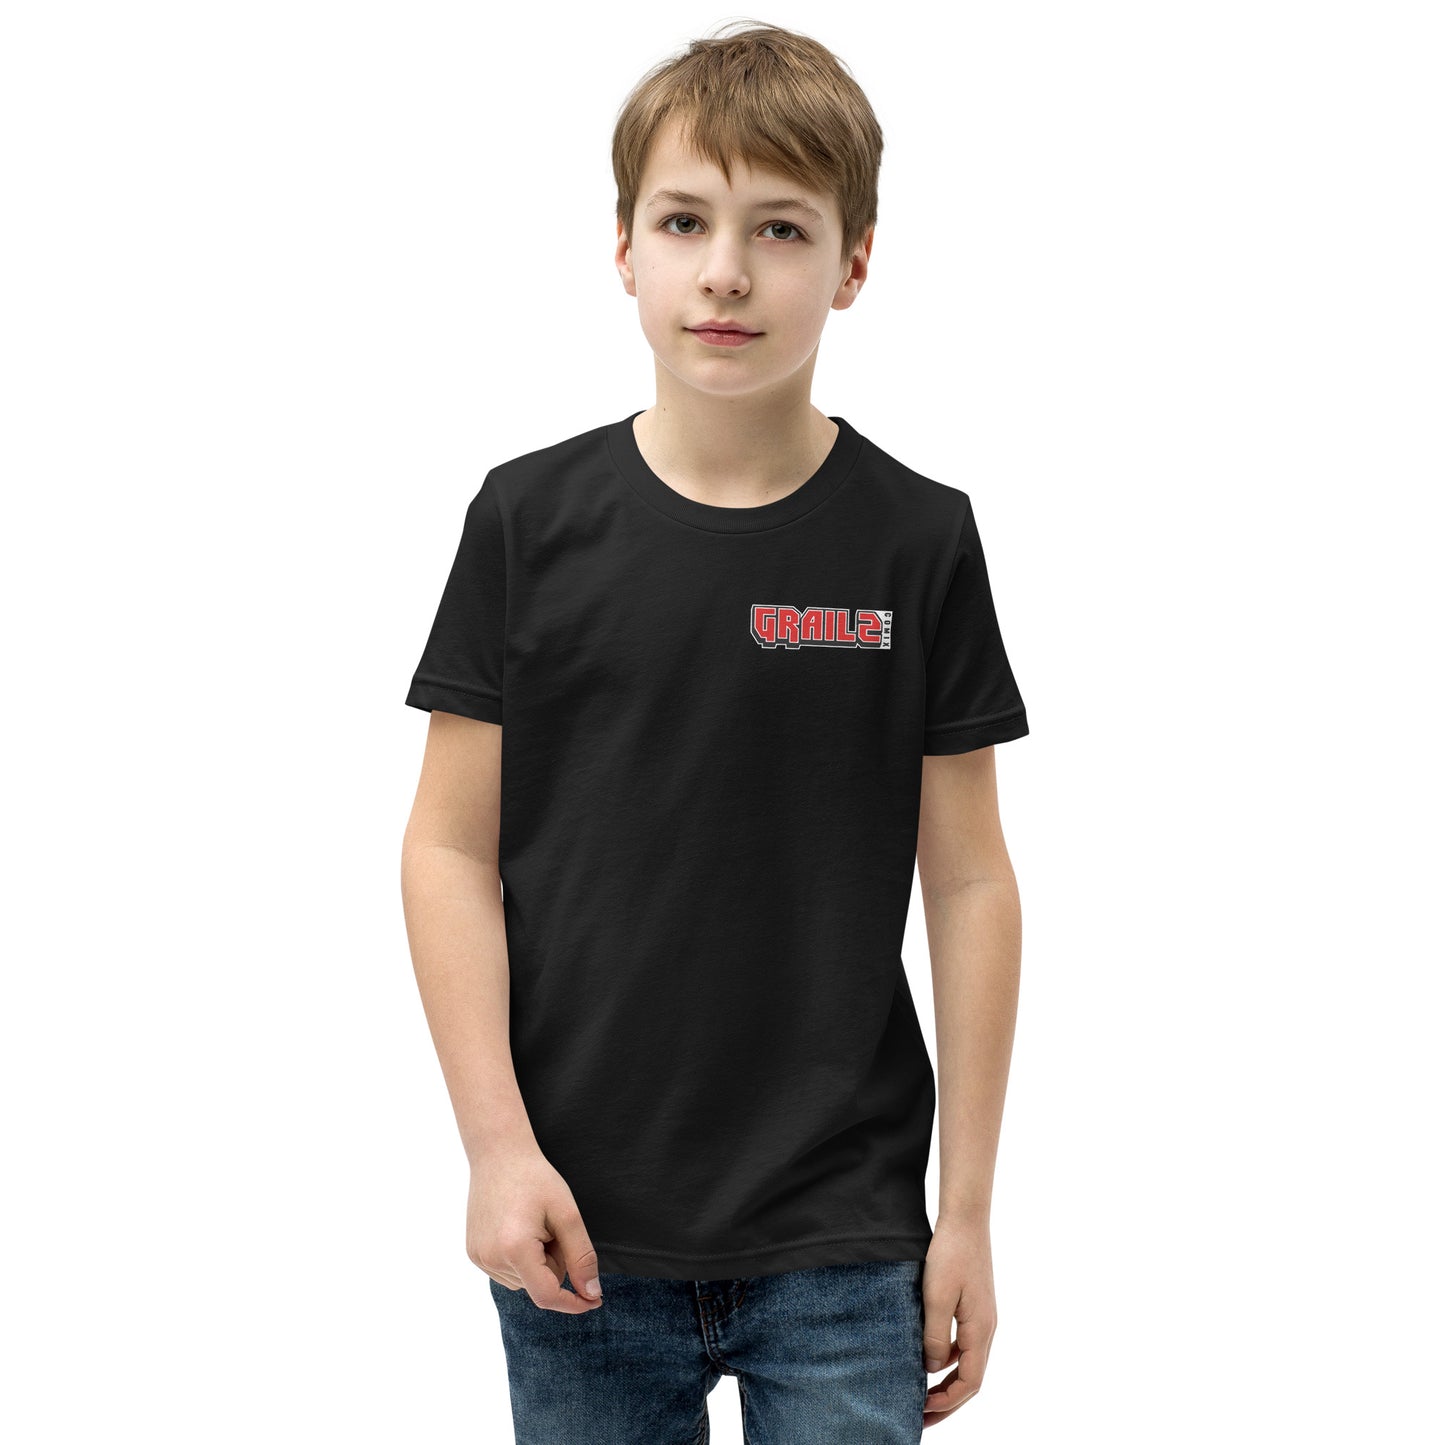 Grailz Comix Youth Short Sleeve T-Shirt